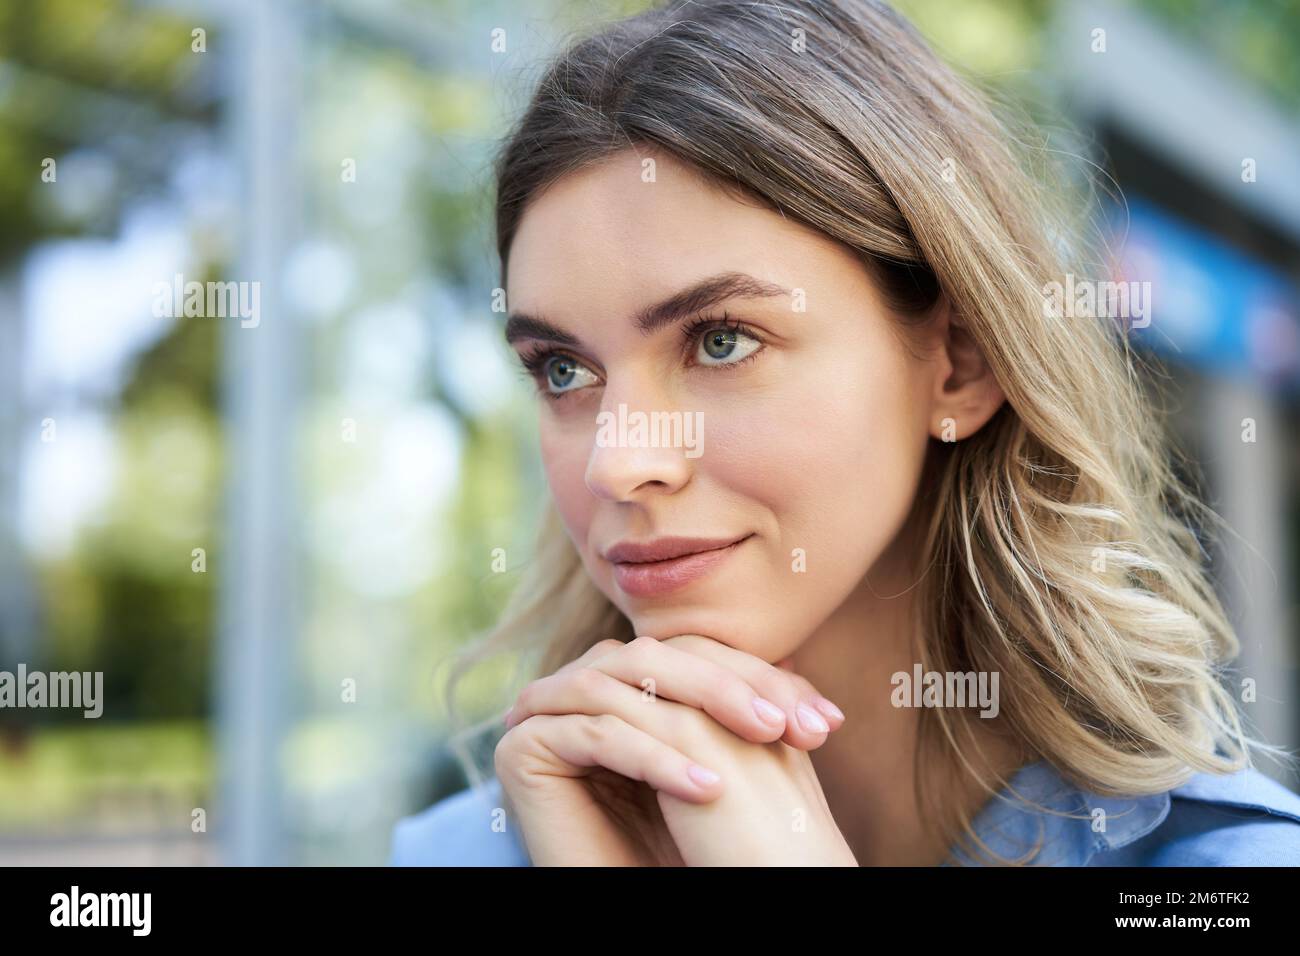 Nahaufnahme eines Porträts einer jungen Frau, die hoffnungsvoll und lächelnd aussieht, den Kopf auf die Hände lehnt, denkt, im Freien sitzt Stockfoto